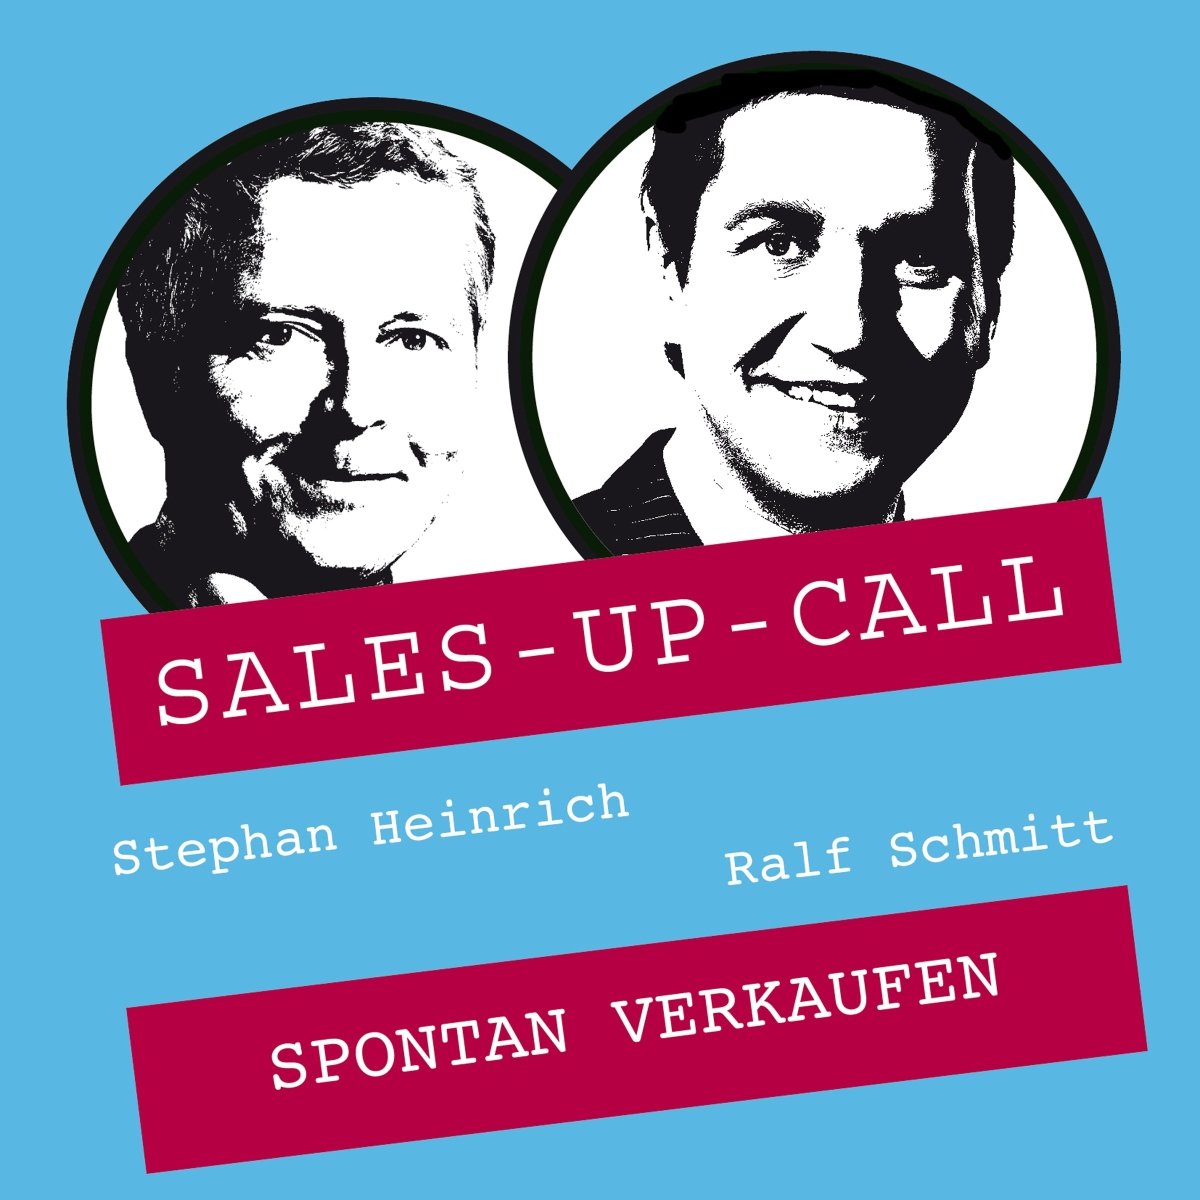 Spontan verkaufen - Sales-up-Call - Stephan Heinrich